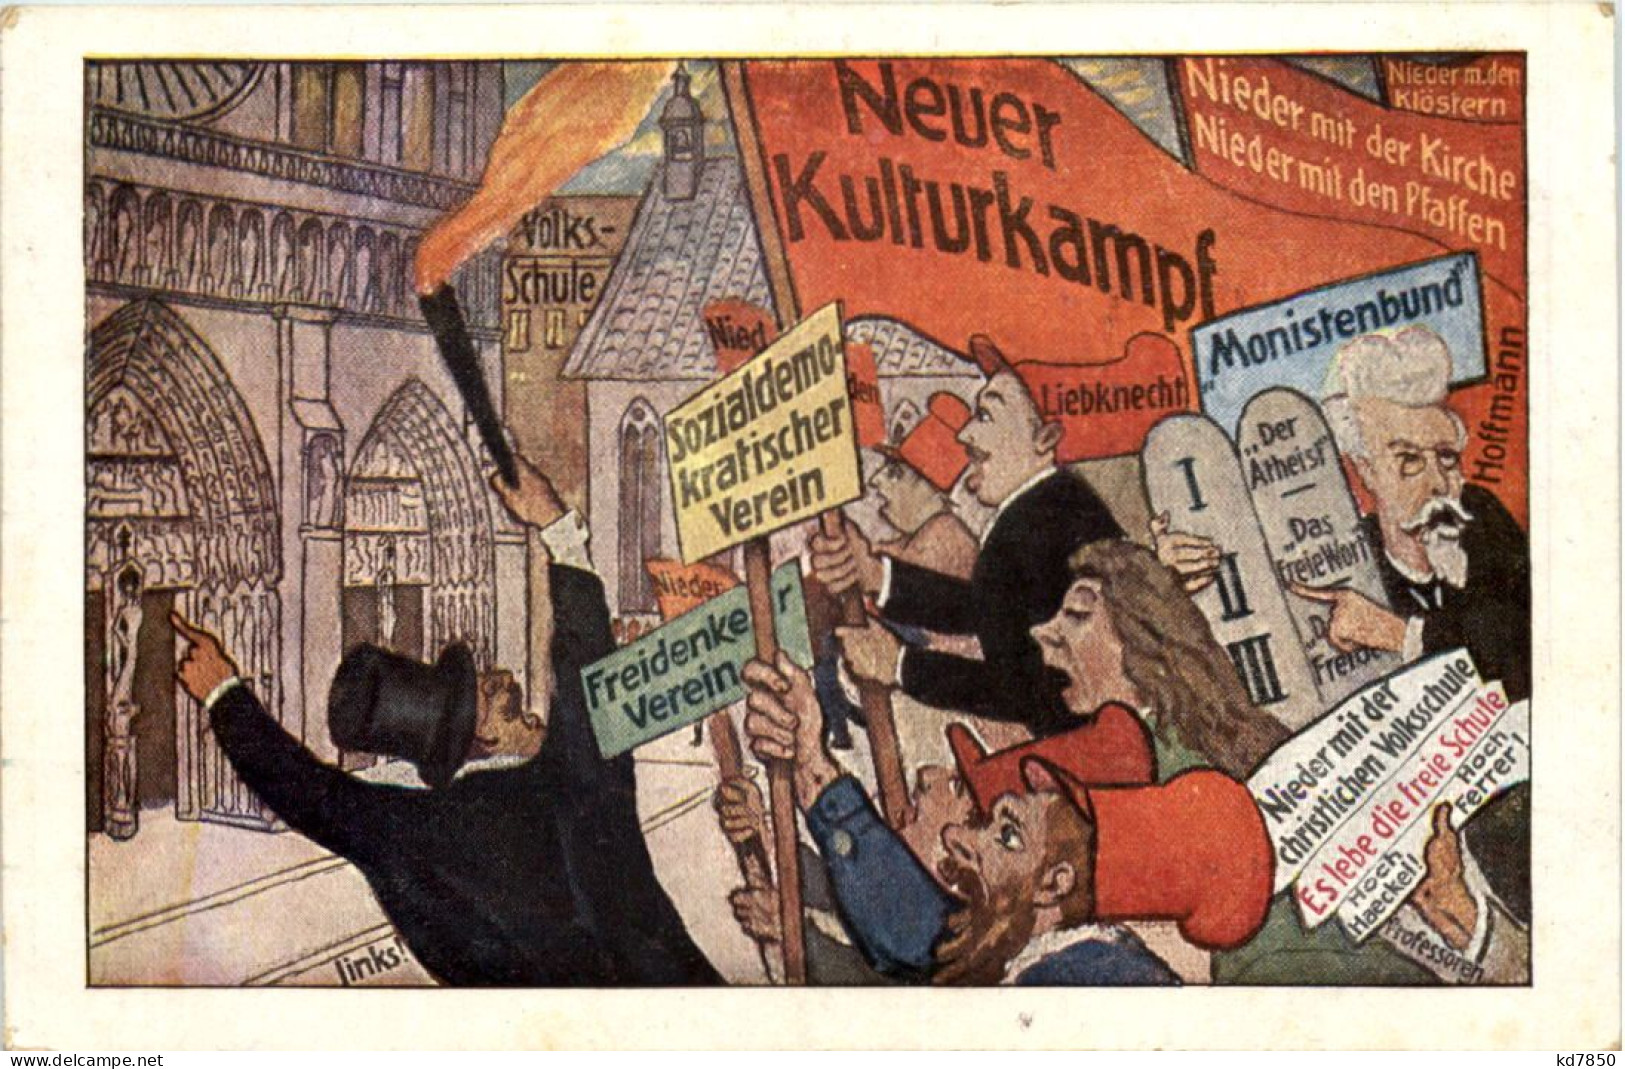 Das Zentrum - Neuer Kulturkampf - Political Parties & Elections